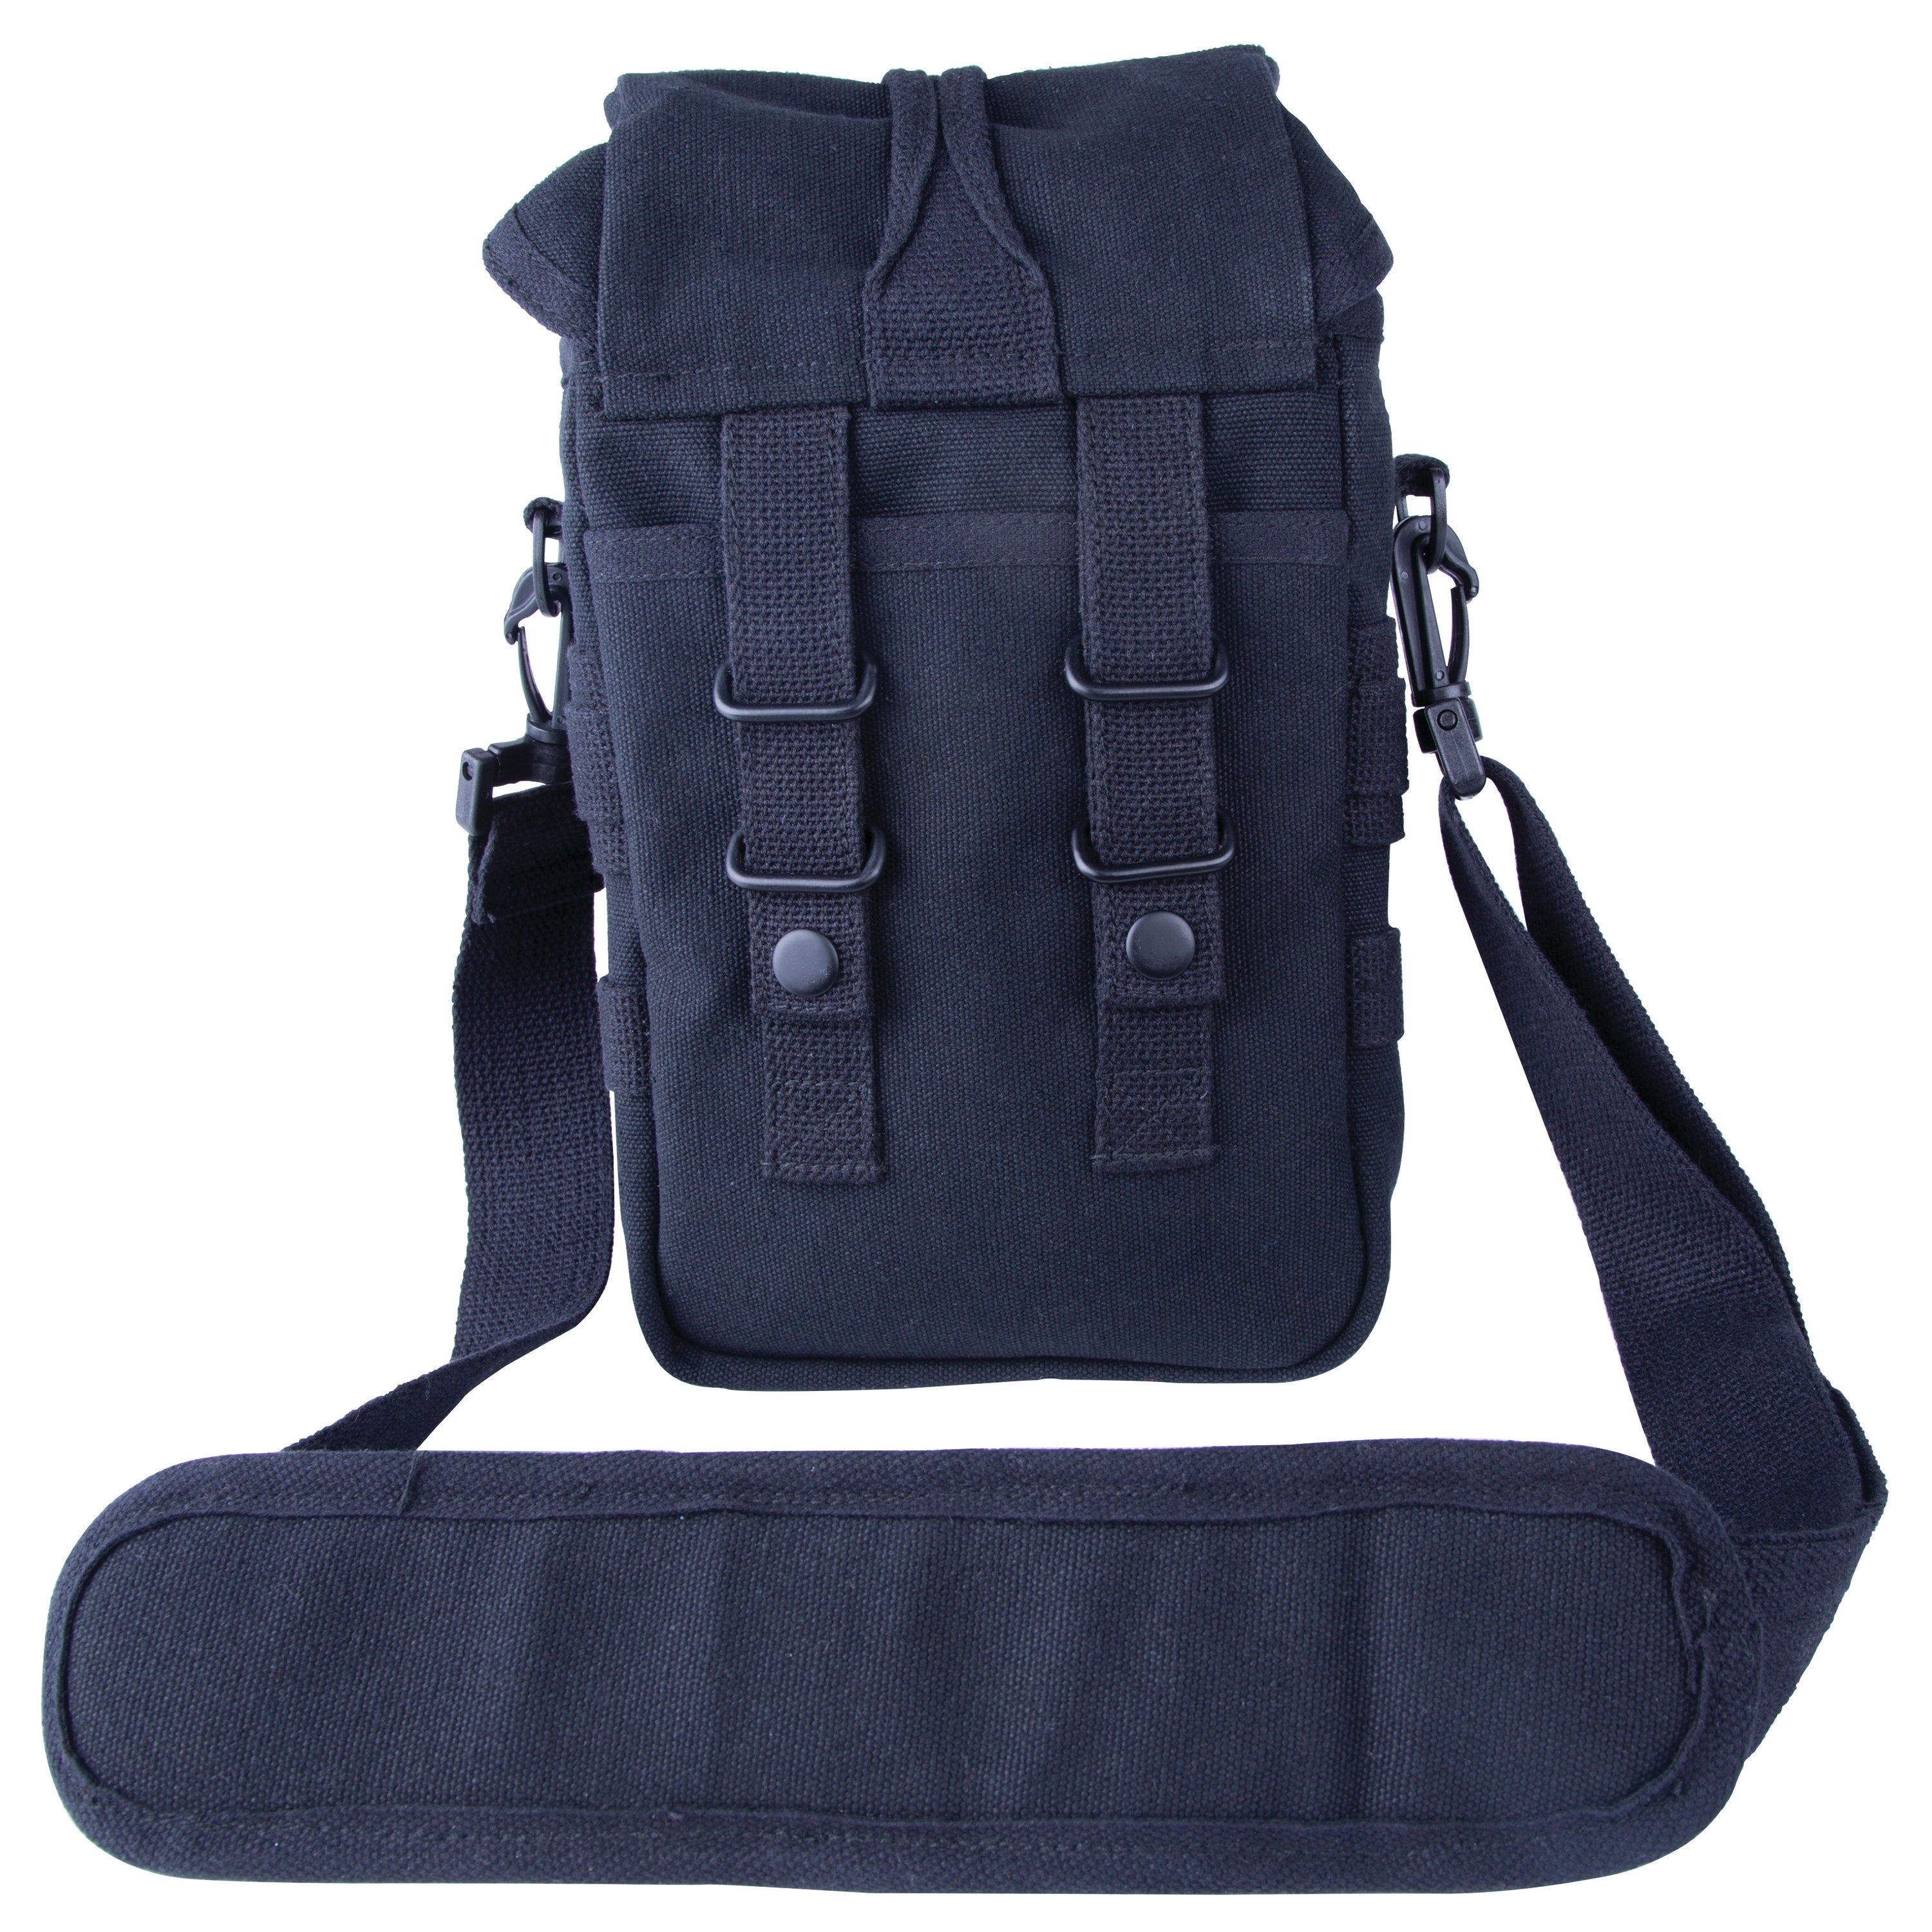 Modular Tactical Shoulder Bag - Black